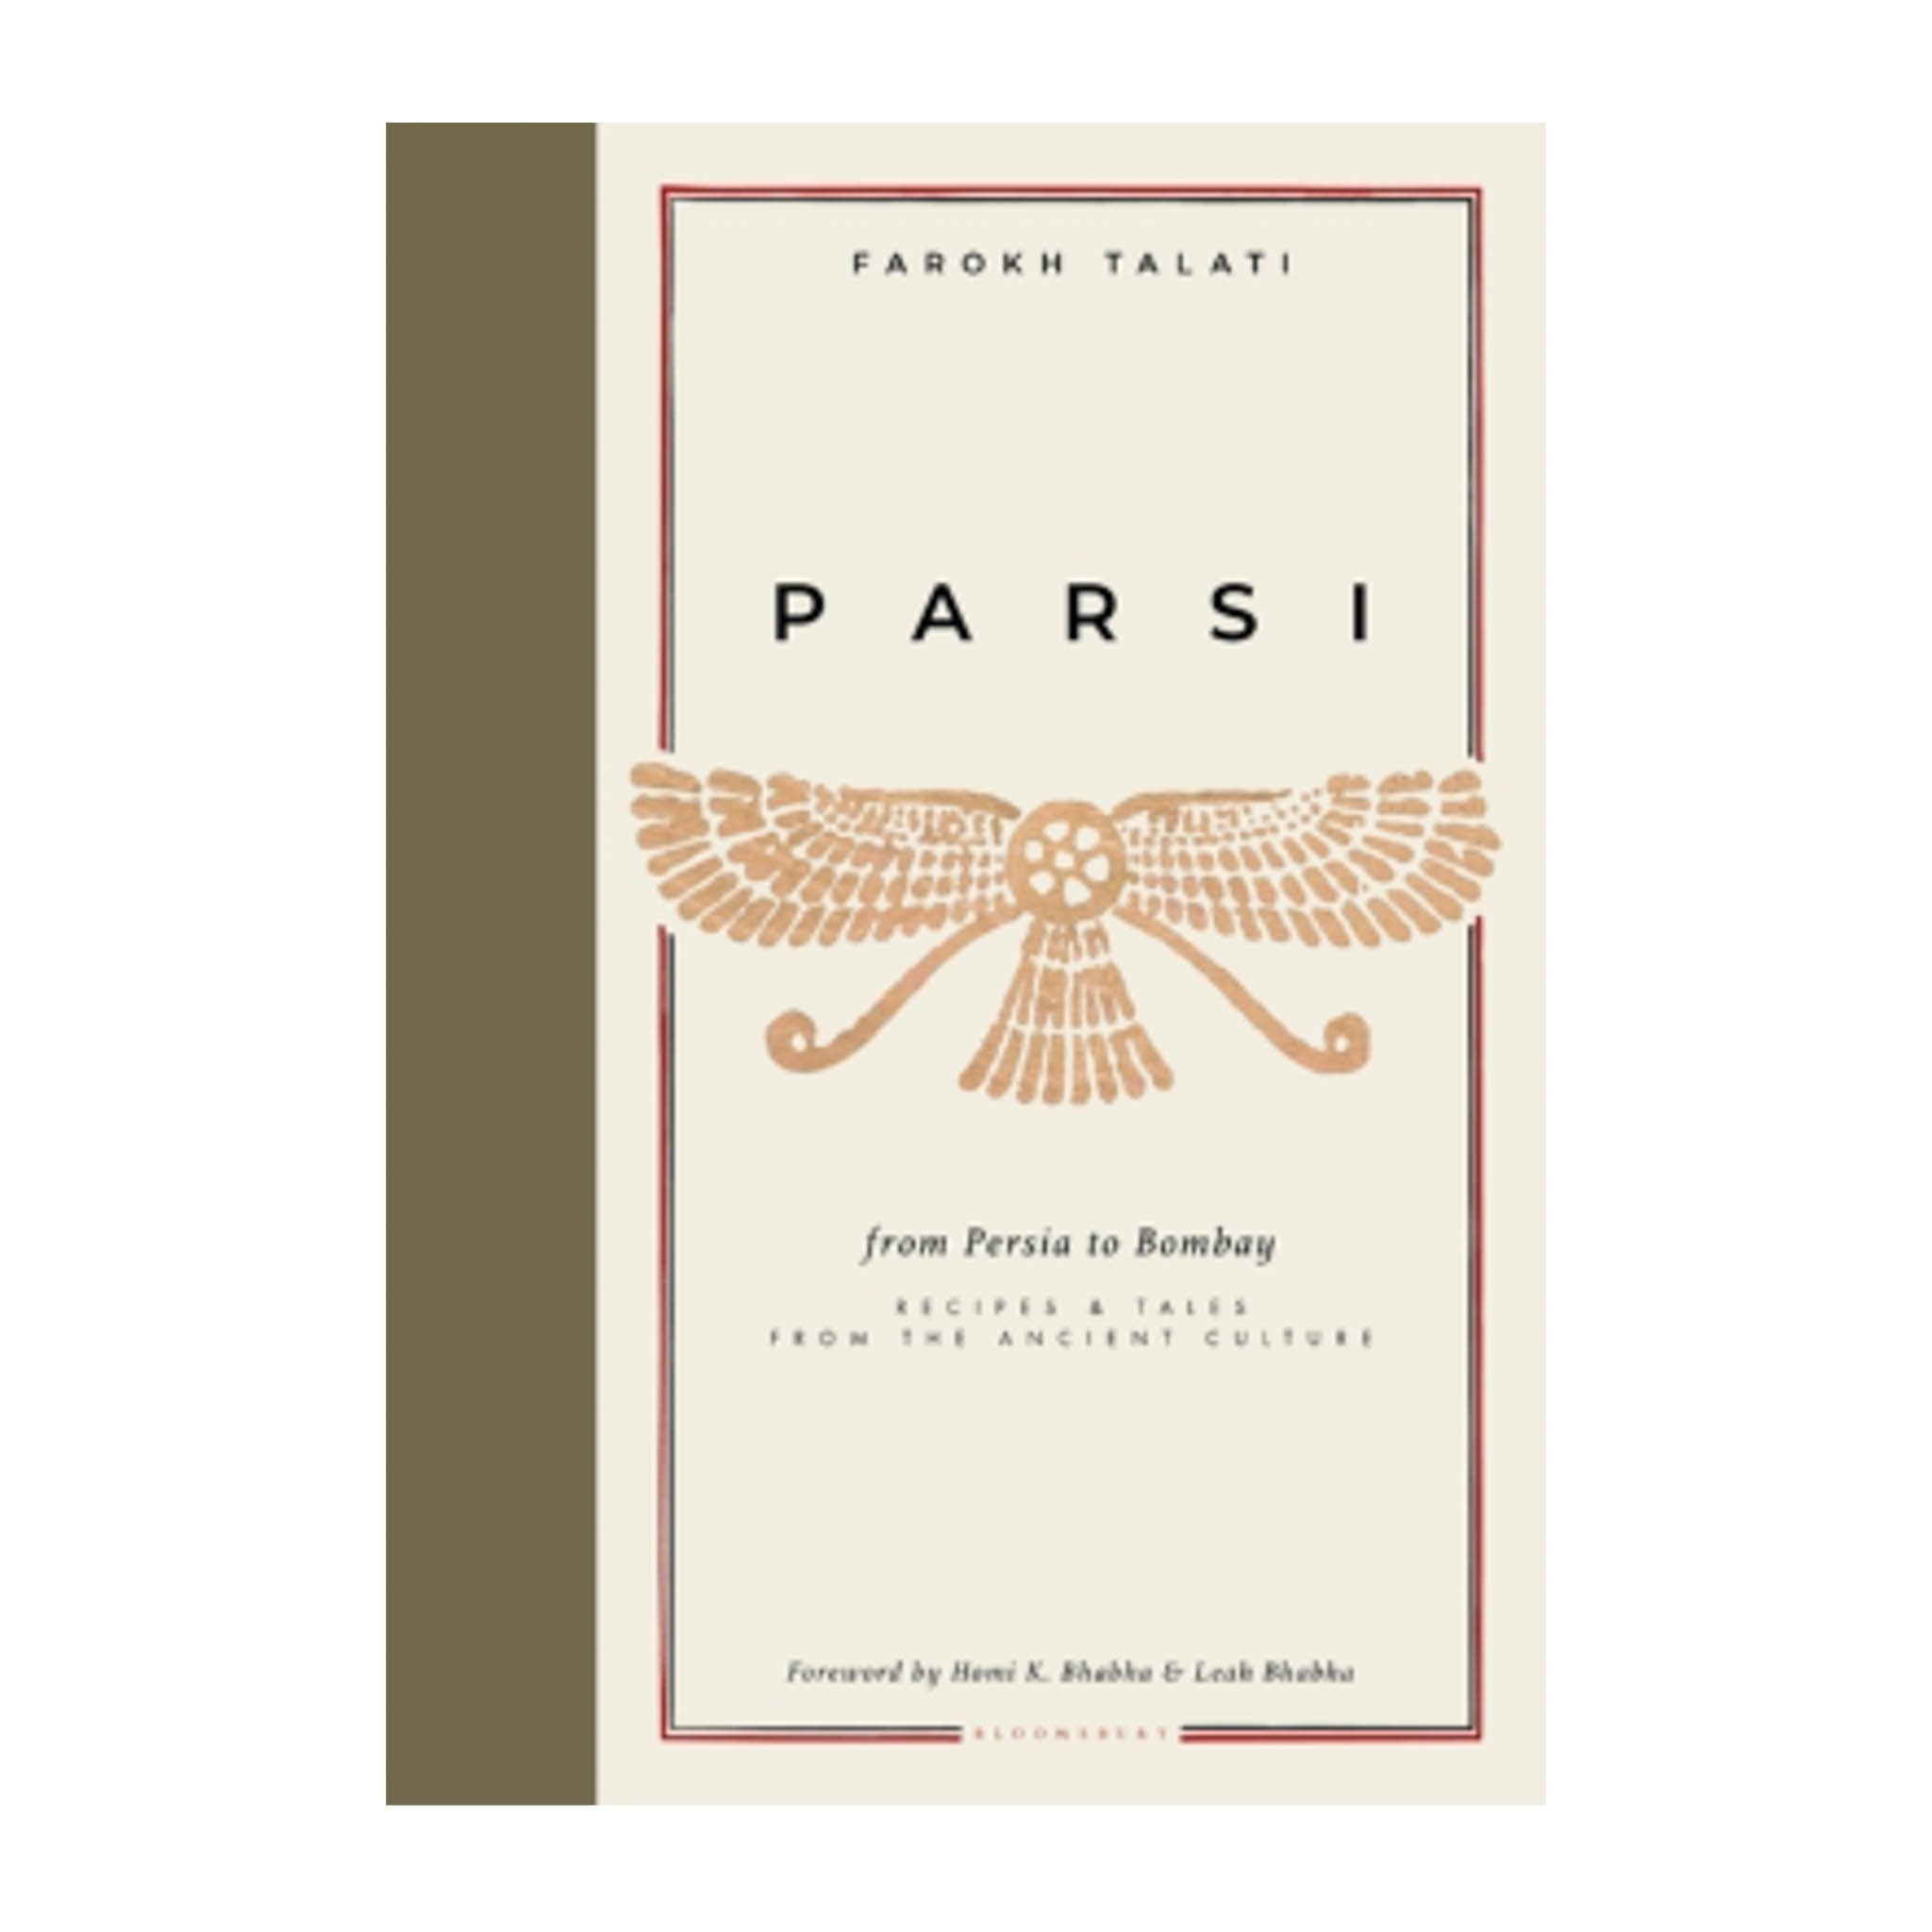 Parsi, by Farokh Talati